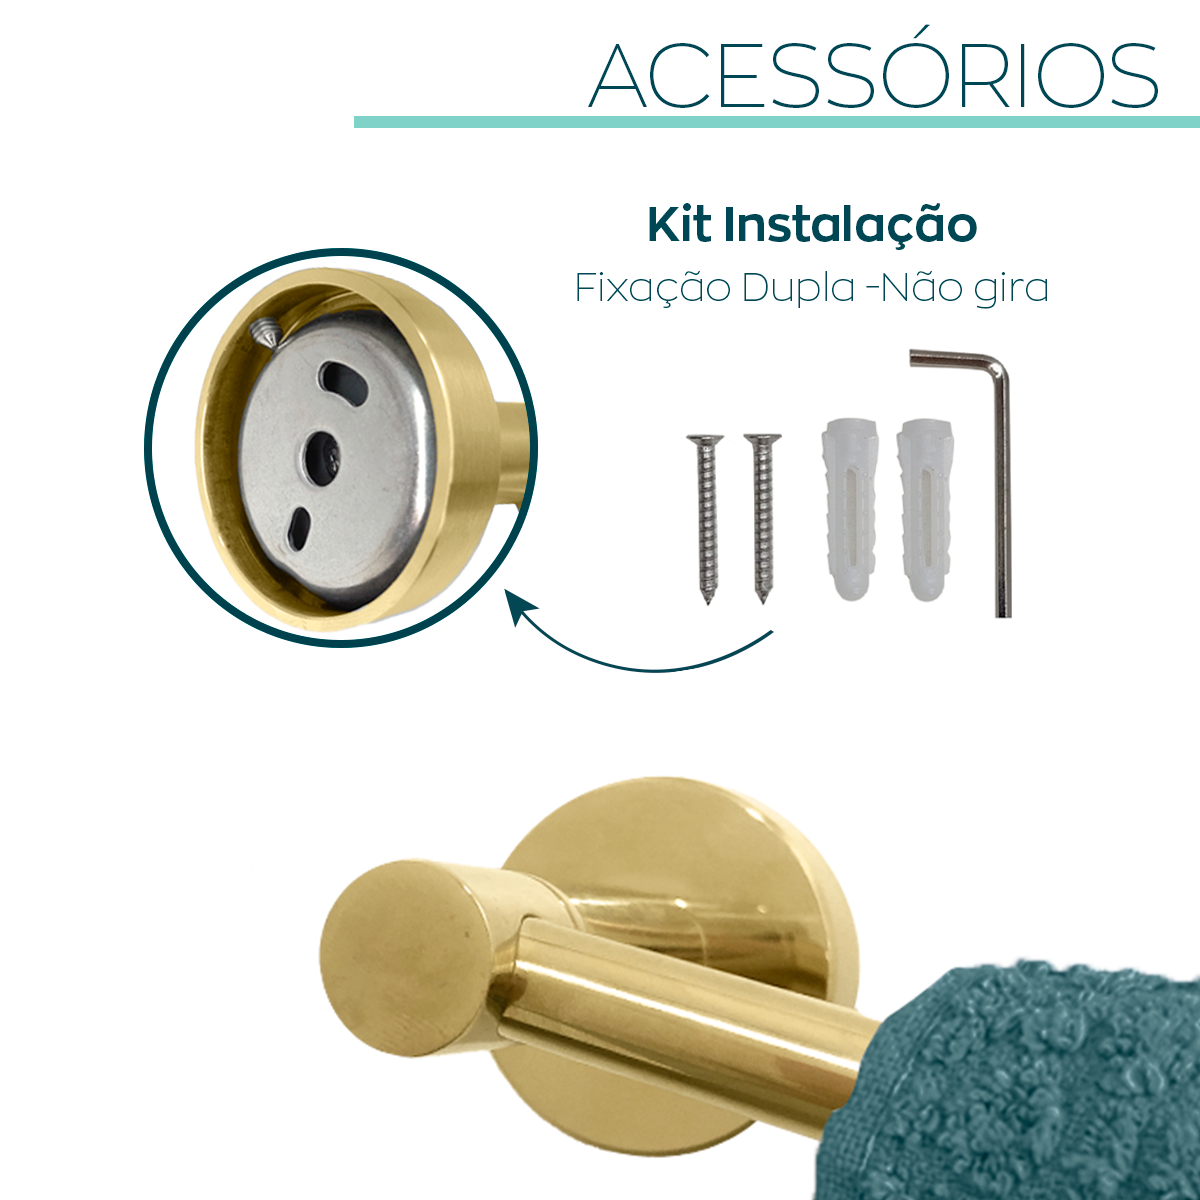 Kit Acessorios Dourado Brilhoso Jogo Banheiro Aço Inox 4 Peças Papeleira Cabide Suporte Porta Toalha - 4